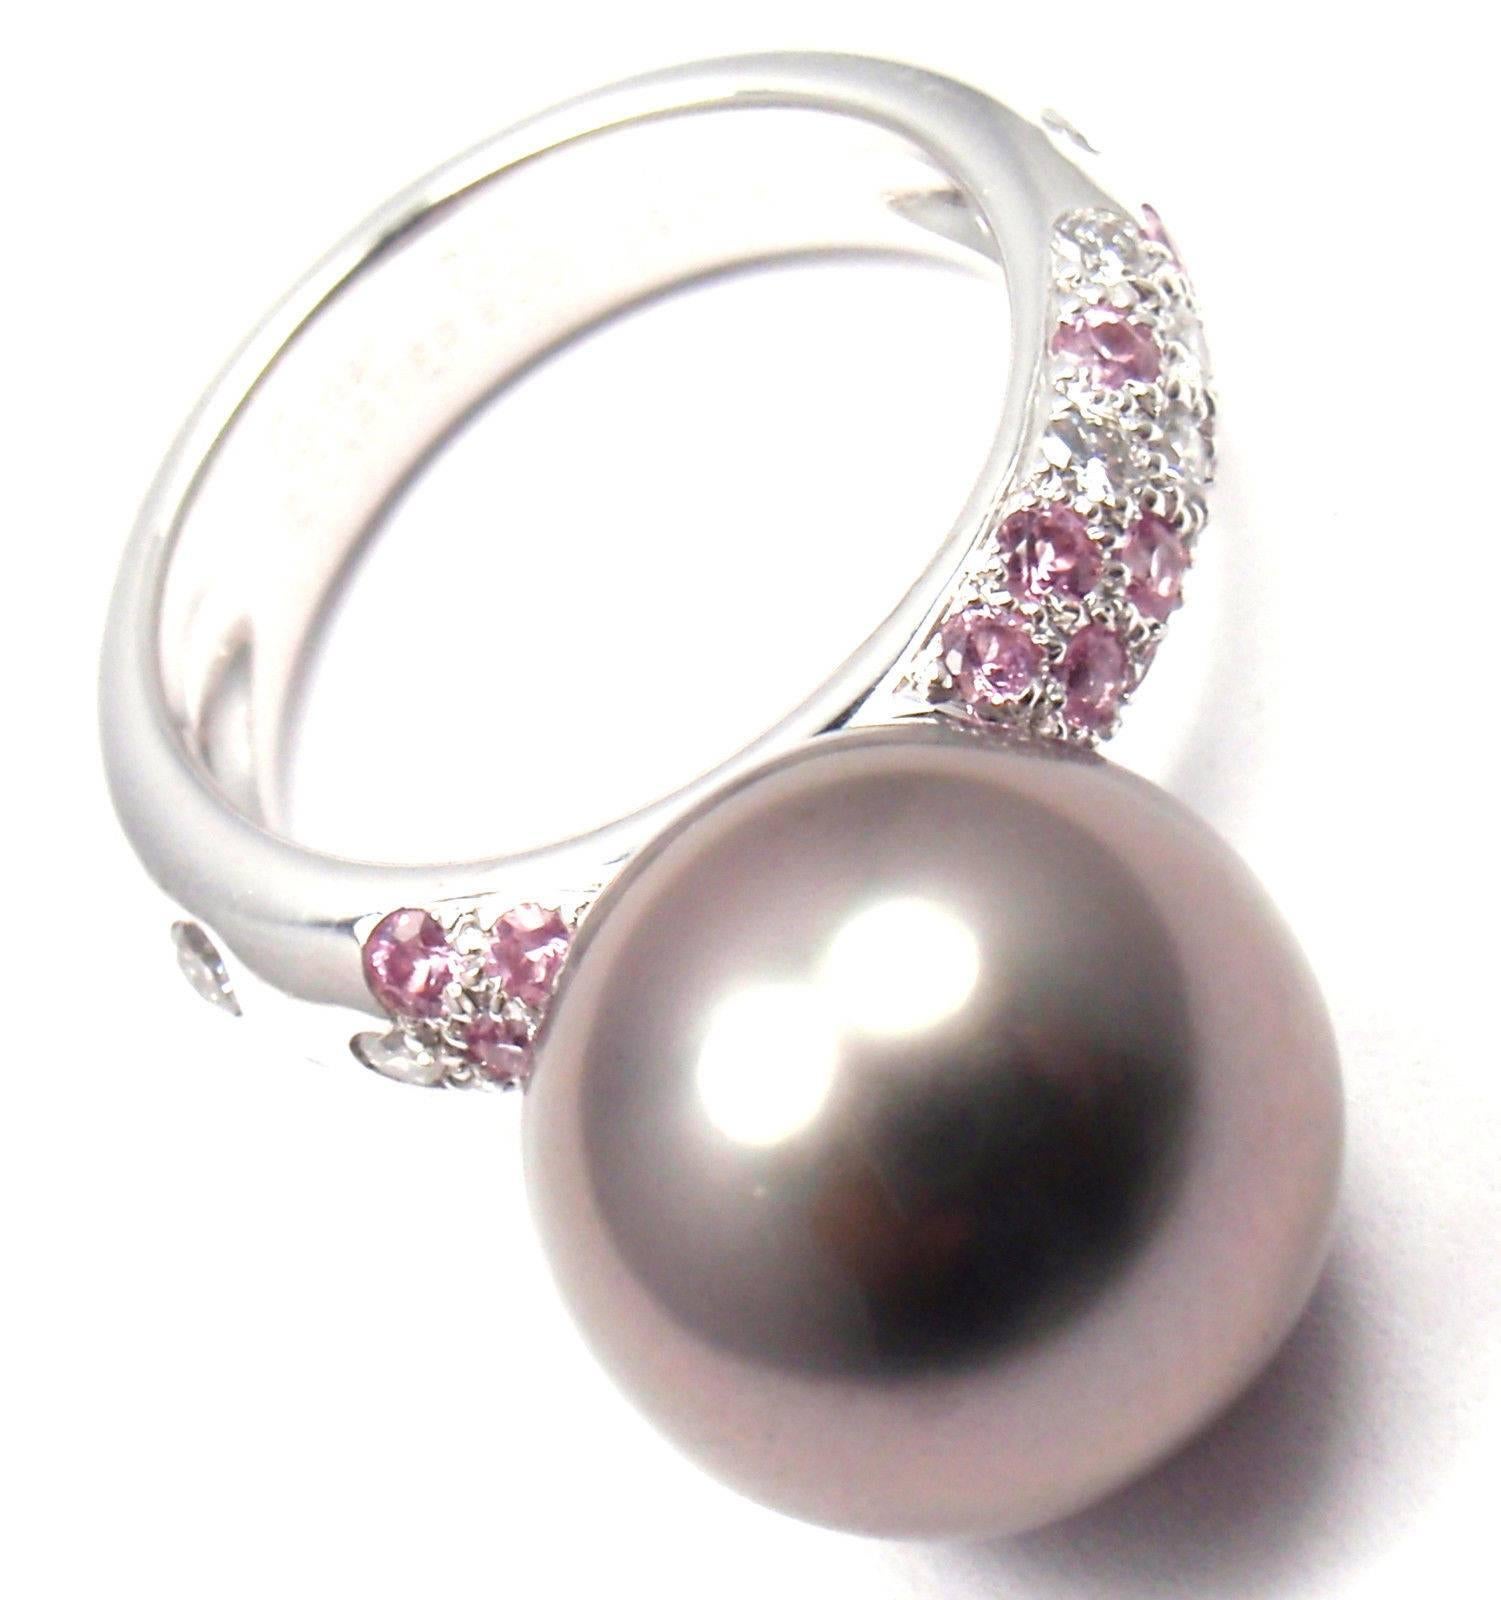 18k Weißgold Diamant und rosa Saphir mit großen Tahiti-Perle Ring von Cartier. 
Mit1 Tahiti-Perle 12,5 mm
12 runde Diamanten im Brillantschliff, Reinheit VS1, Farbe E, Gesamtgewicht ca. 0,36 ct
15 runde rosa Saphire.
Dieser Ring kommt mit original